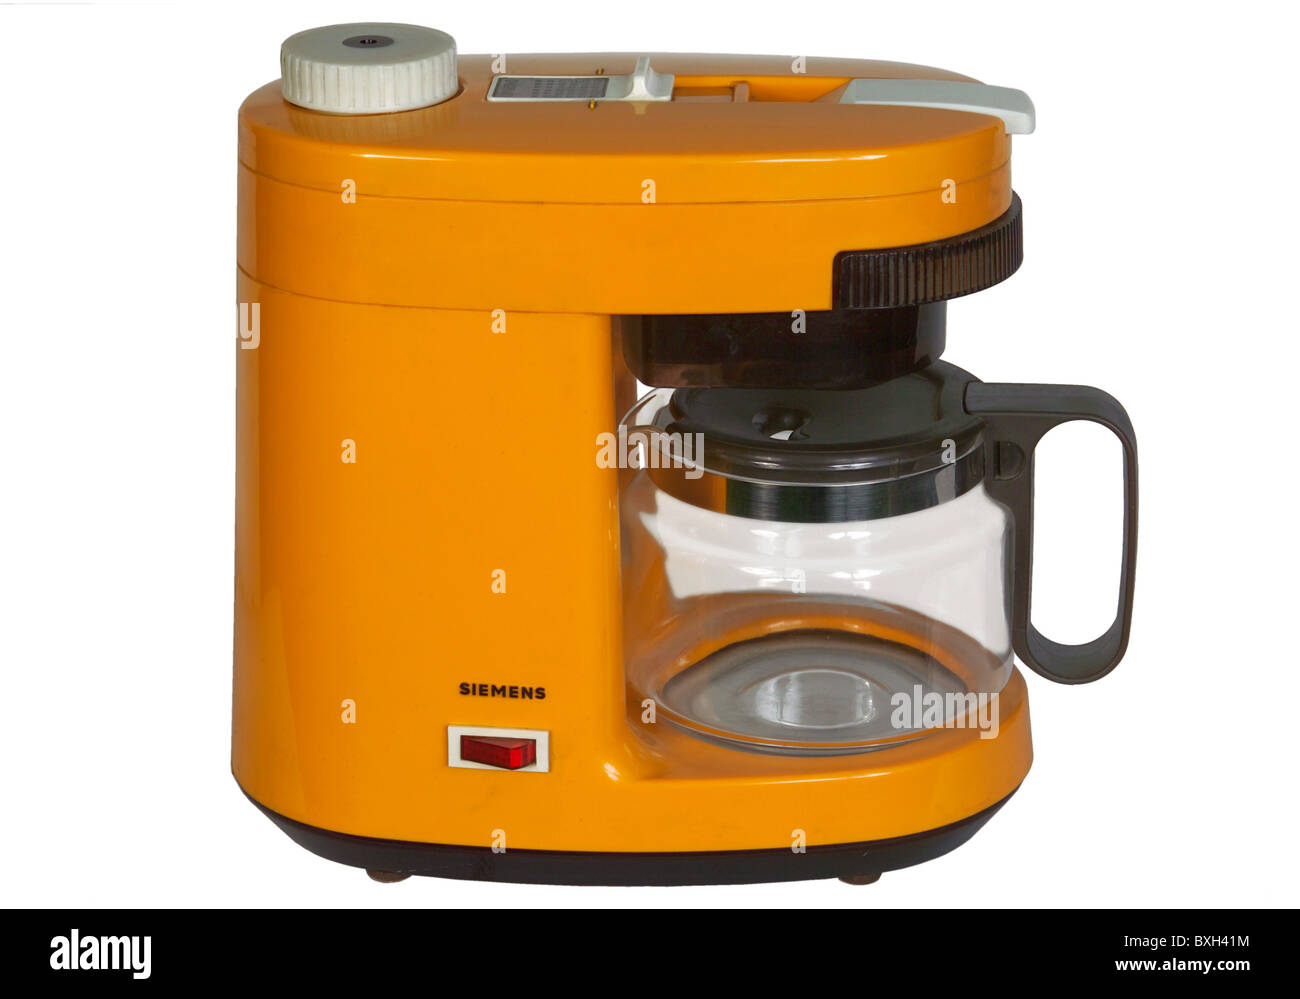 Siemens coffee maker -Fotos und -Bildmaterial in hoher Auflösung – Alamy